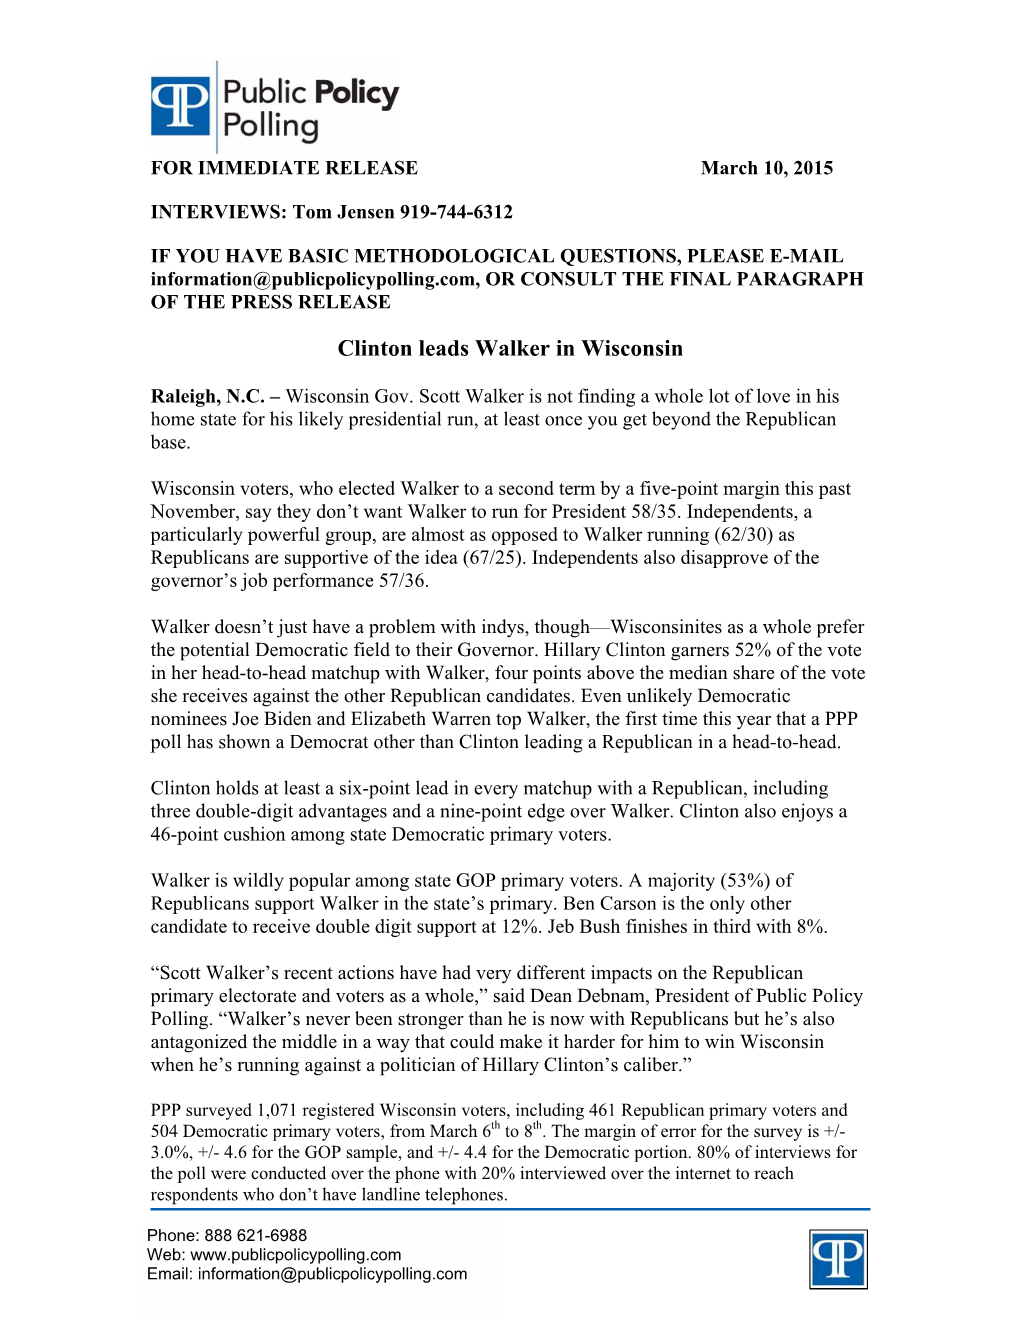 Clinton Leads Walker in Wisconsin